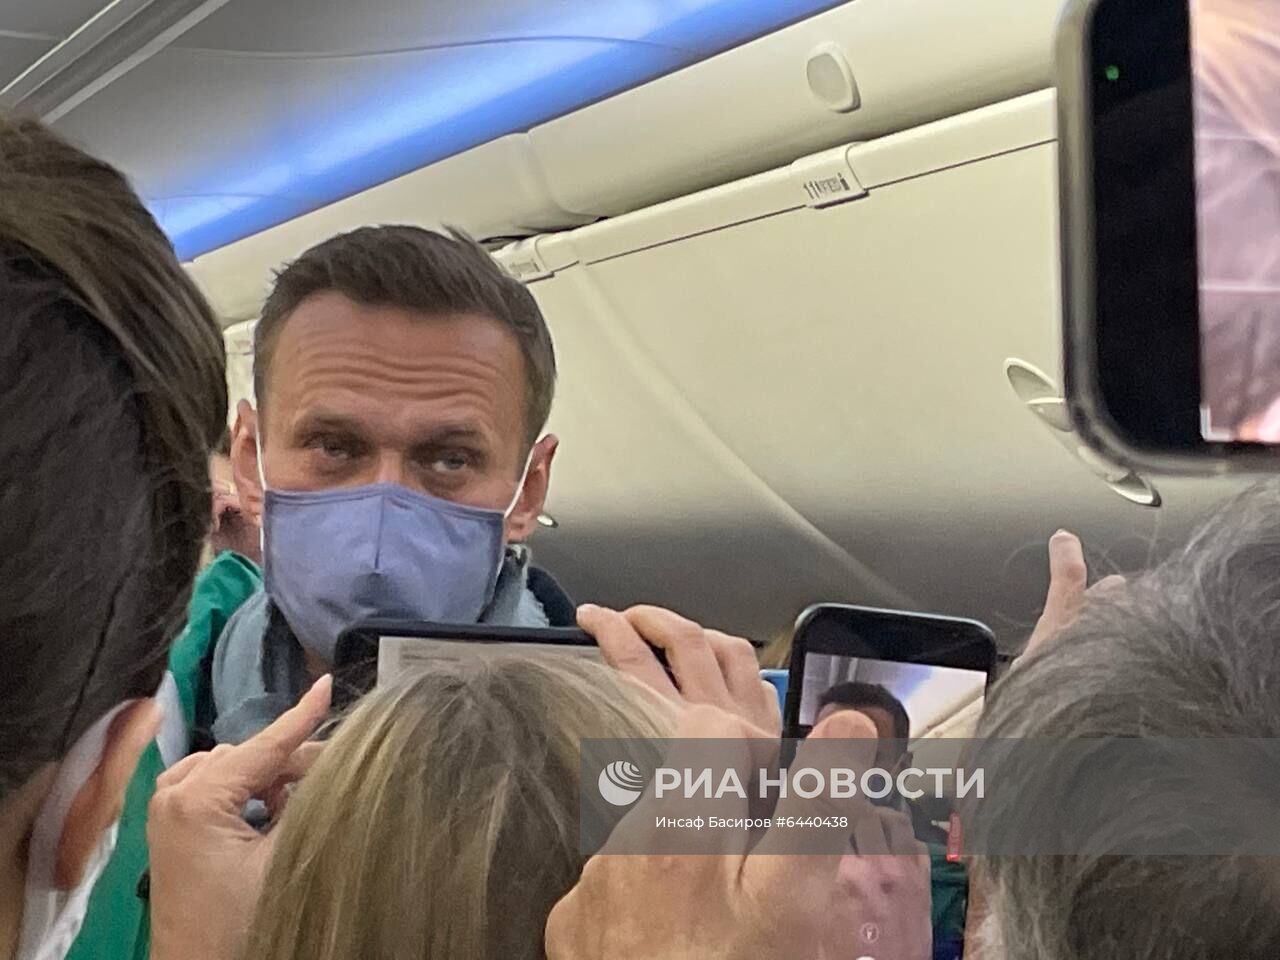 Аэропорт Шереметьево, куда приземлился самолёт с А. Навальным